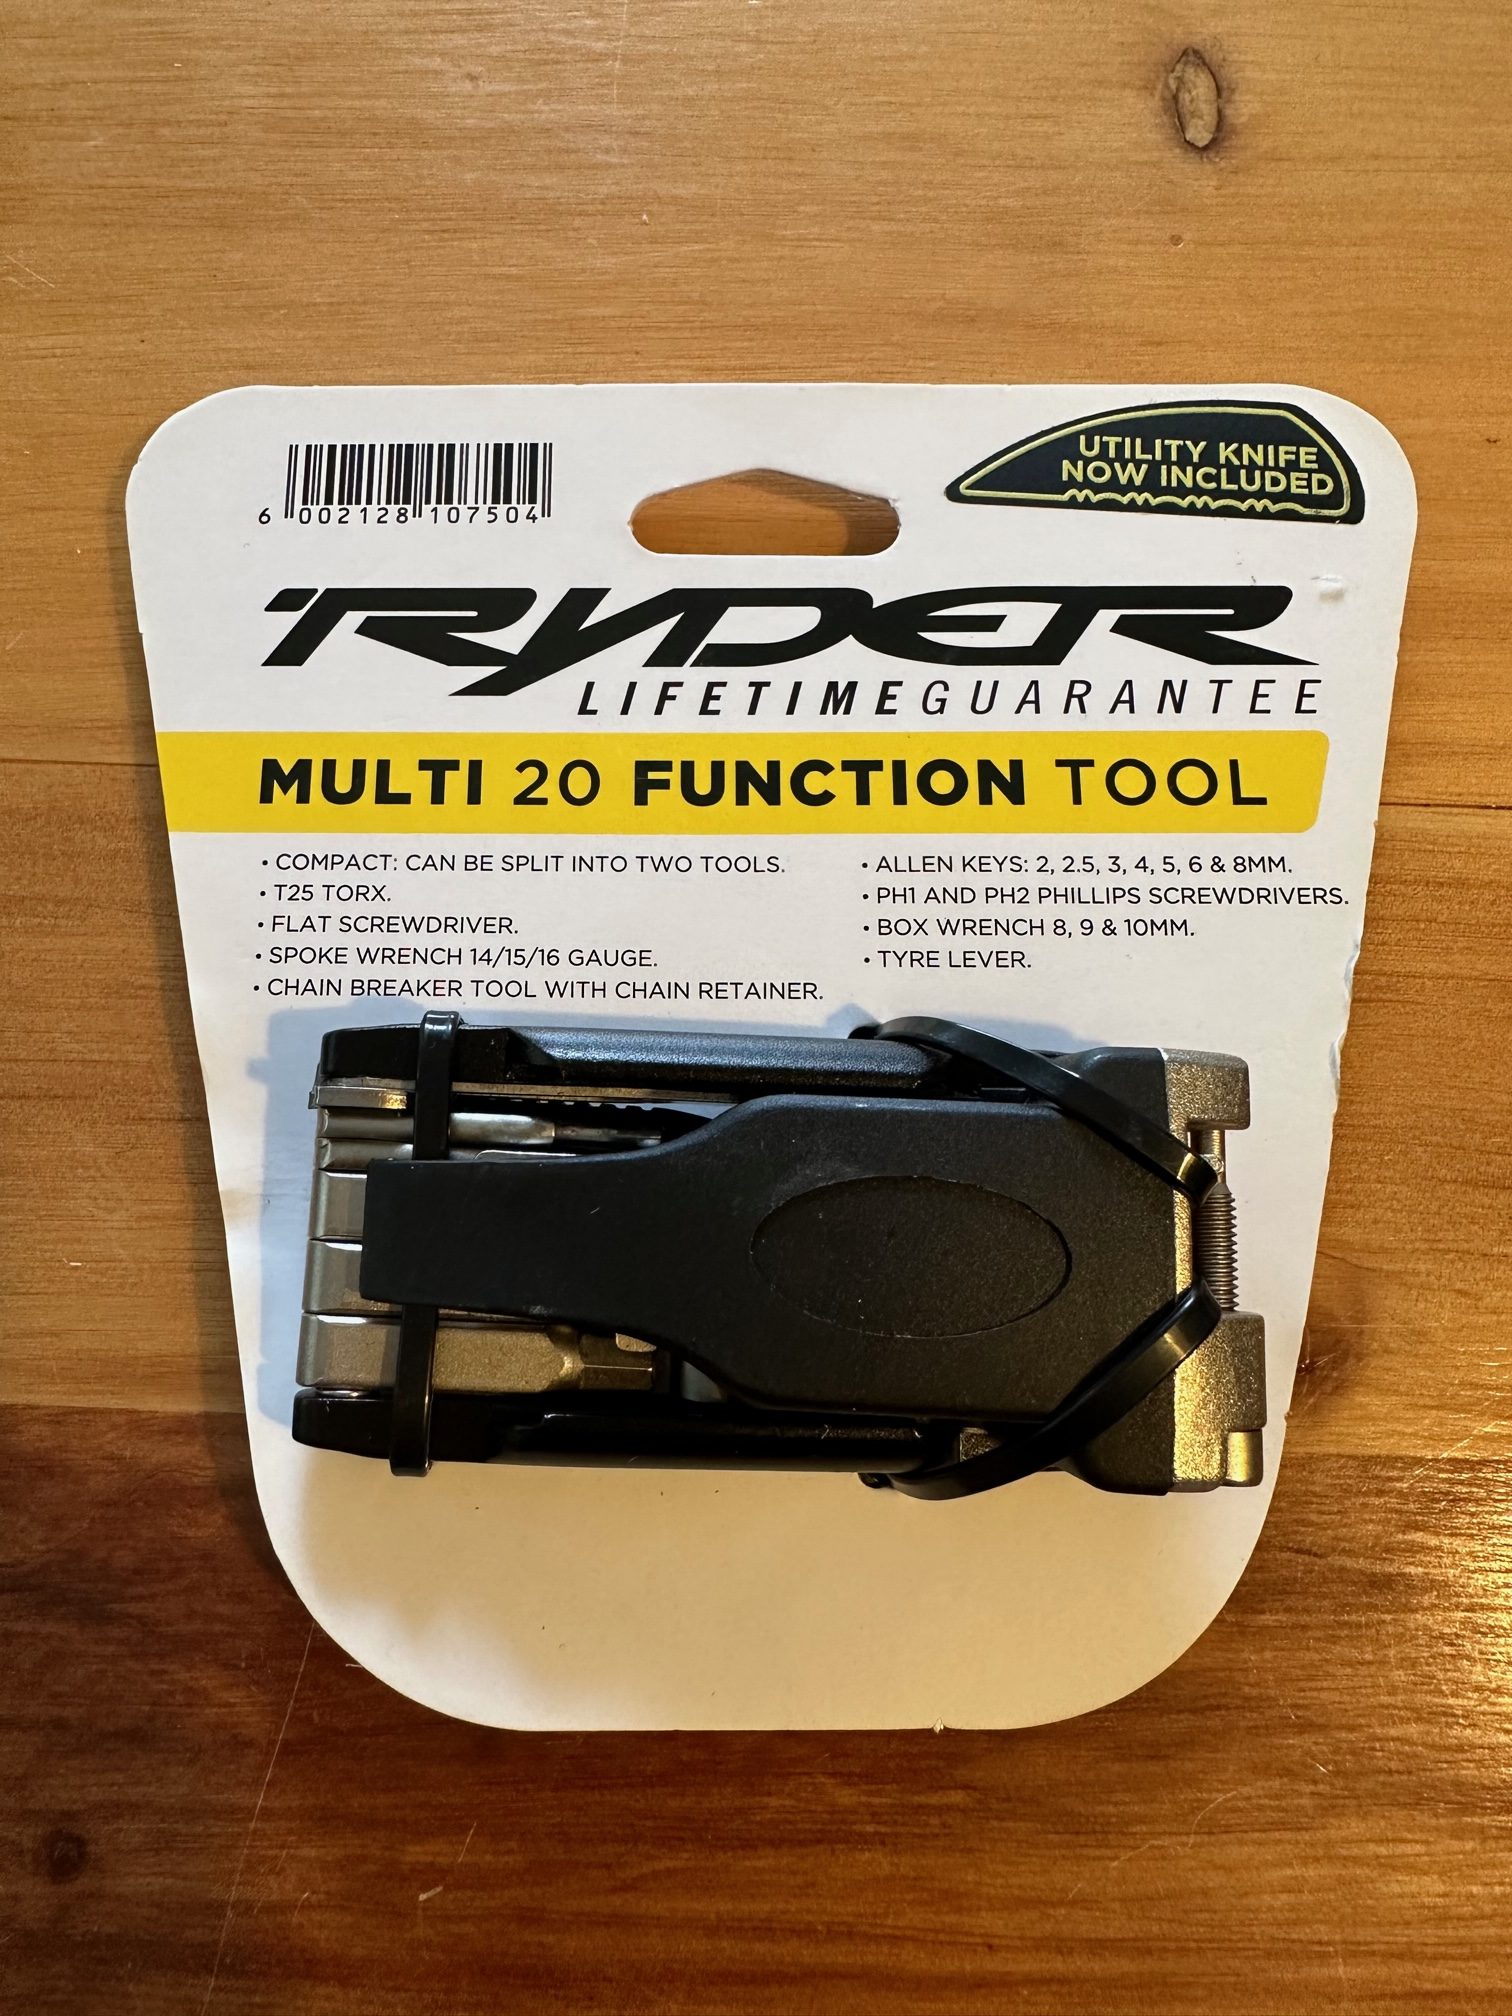 Multi 20 tool